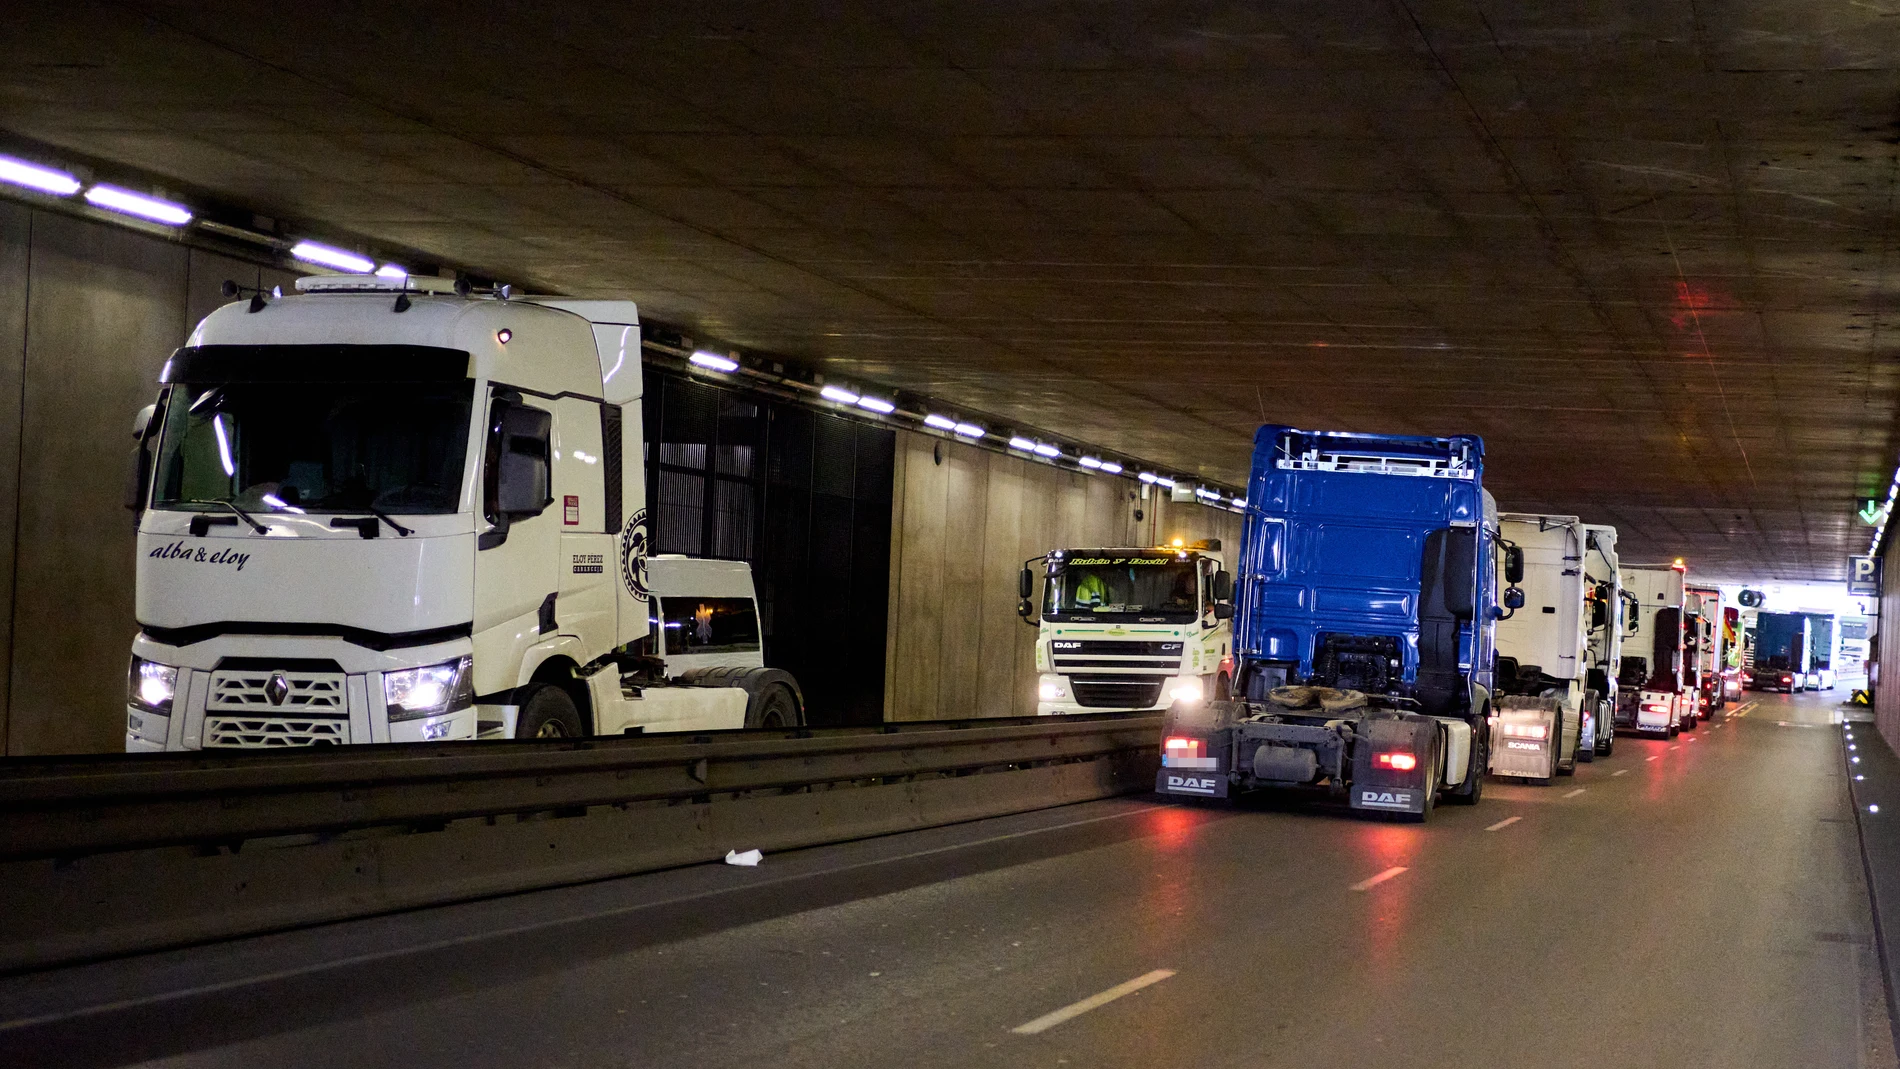 Economía.- COAG exige que se garantice la libre circulación de mercancía en Francia tras ataques a camiones españoles